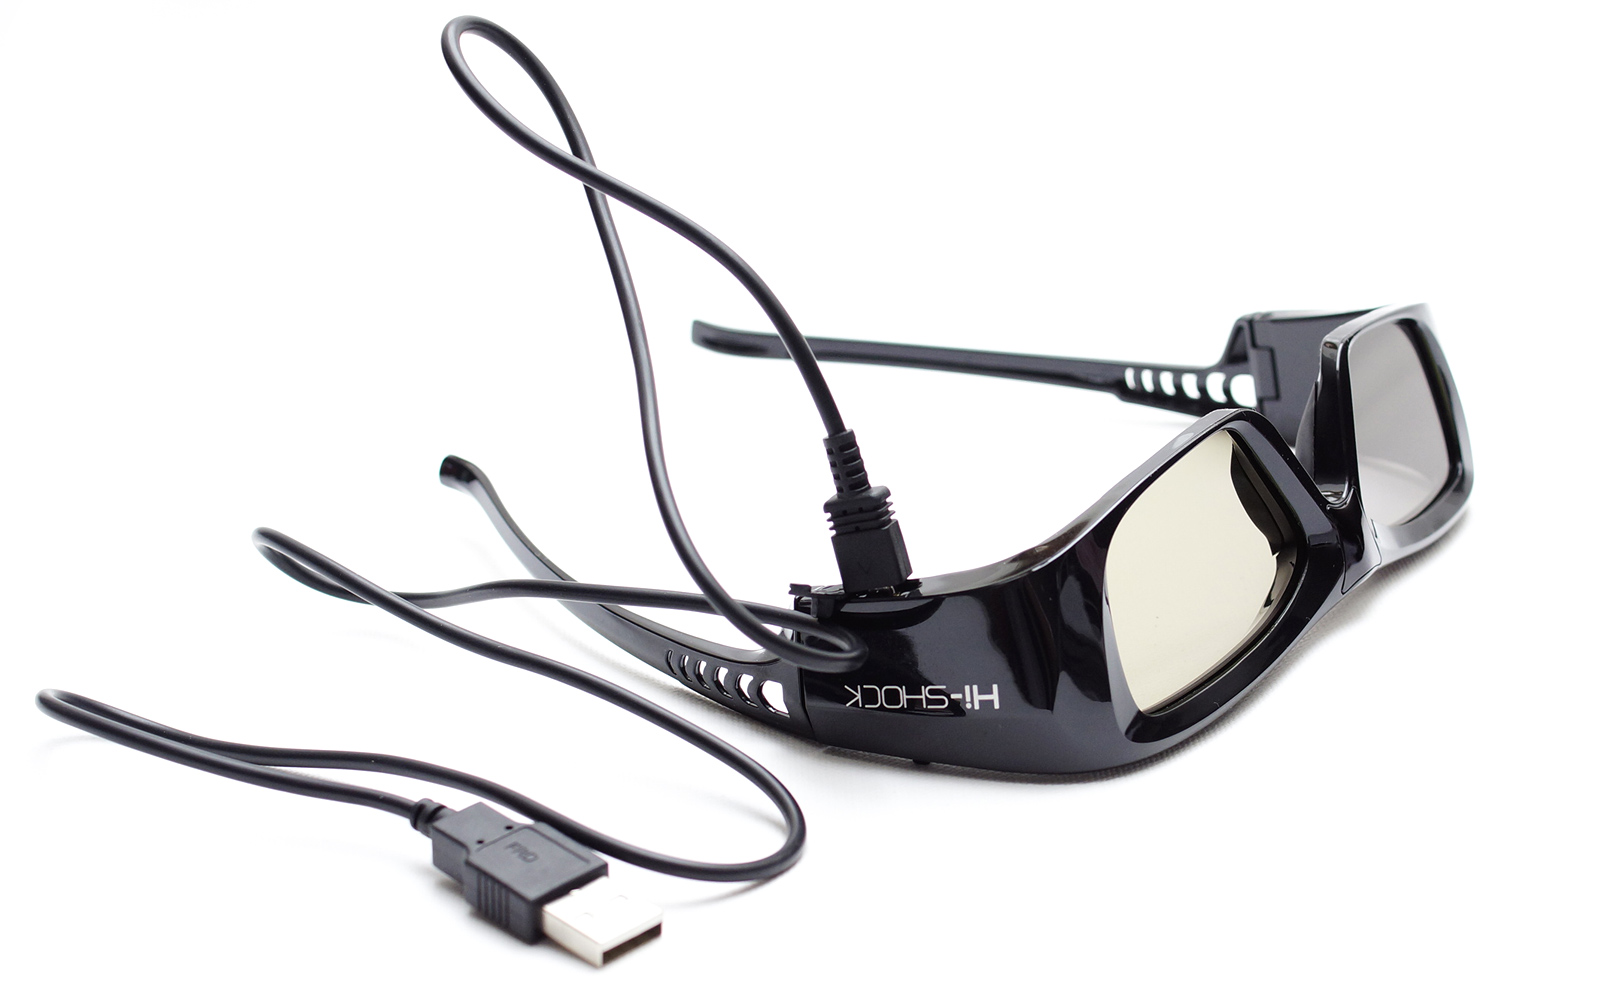 - 3D Link aktive 3D wiederaufladbar DLP Diamond Black Pro 3D HI-SHOCK - schwarz Brille für DLP Brille Beamer